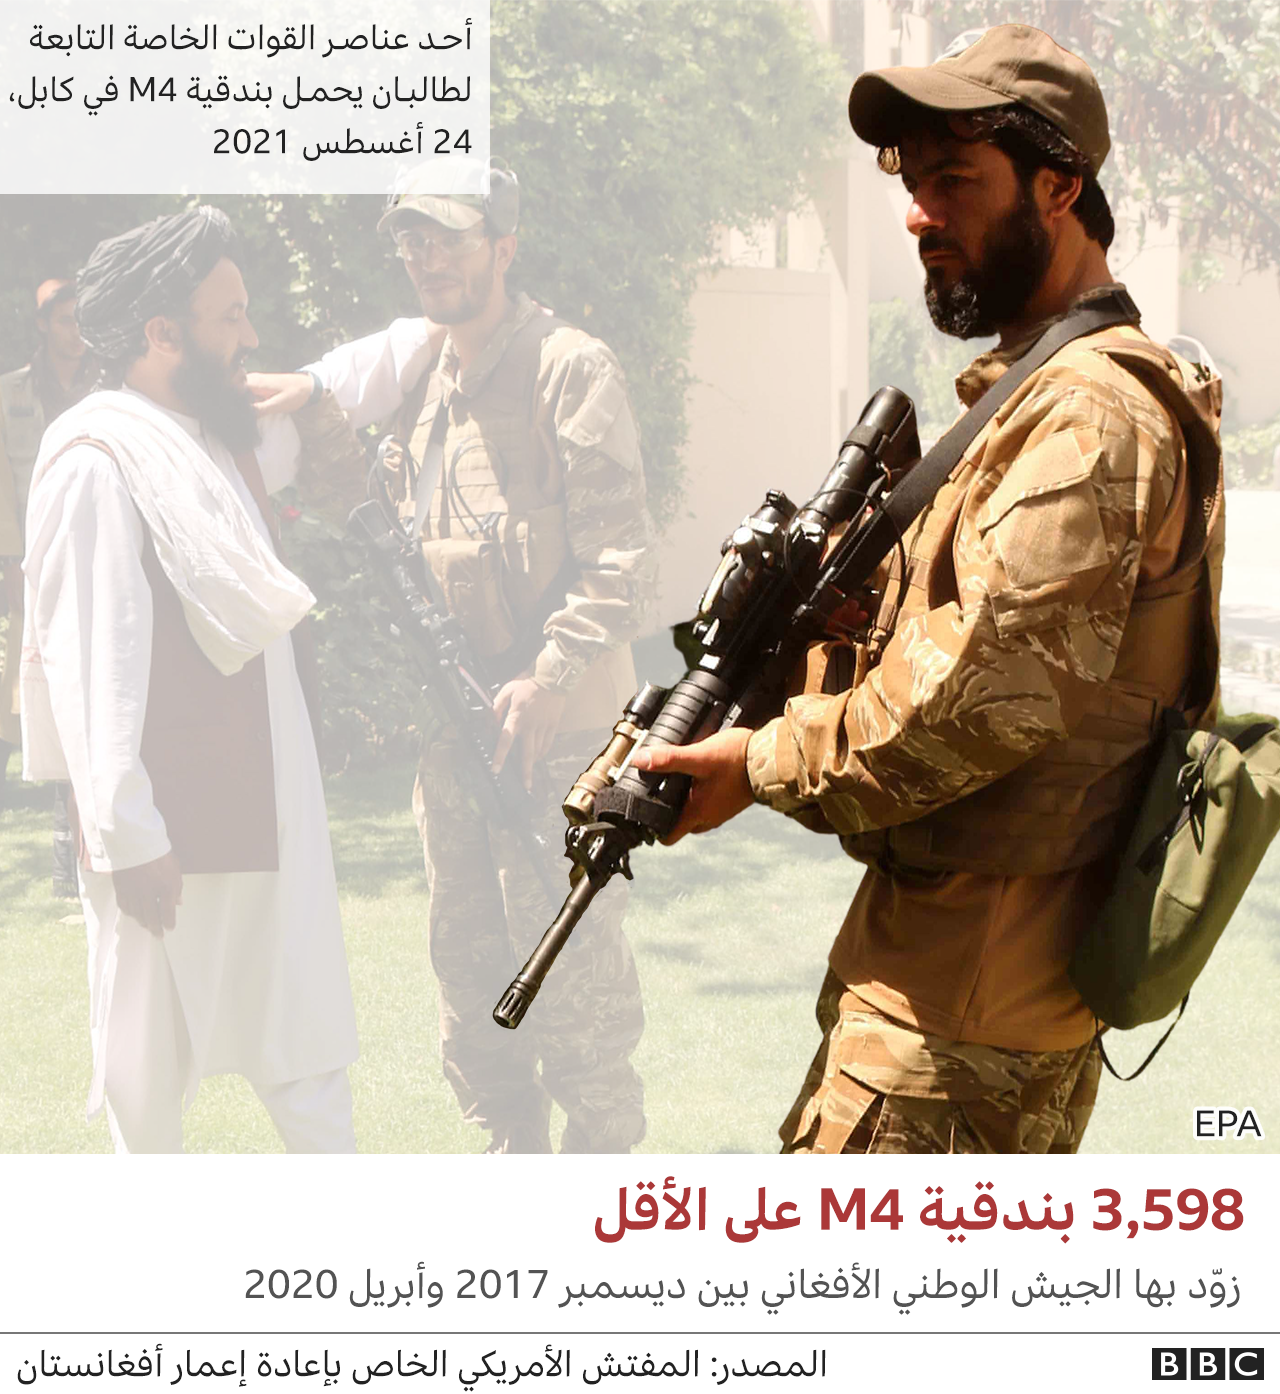 أحد أفراد القوات الخاصة التابعة لطالبان يحمل بندقية أم 4 الأمريكية